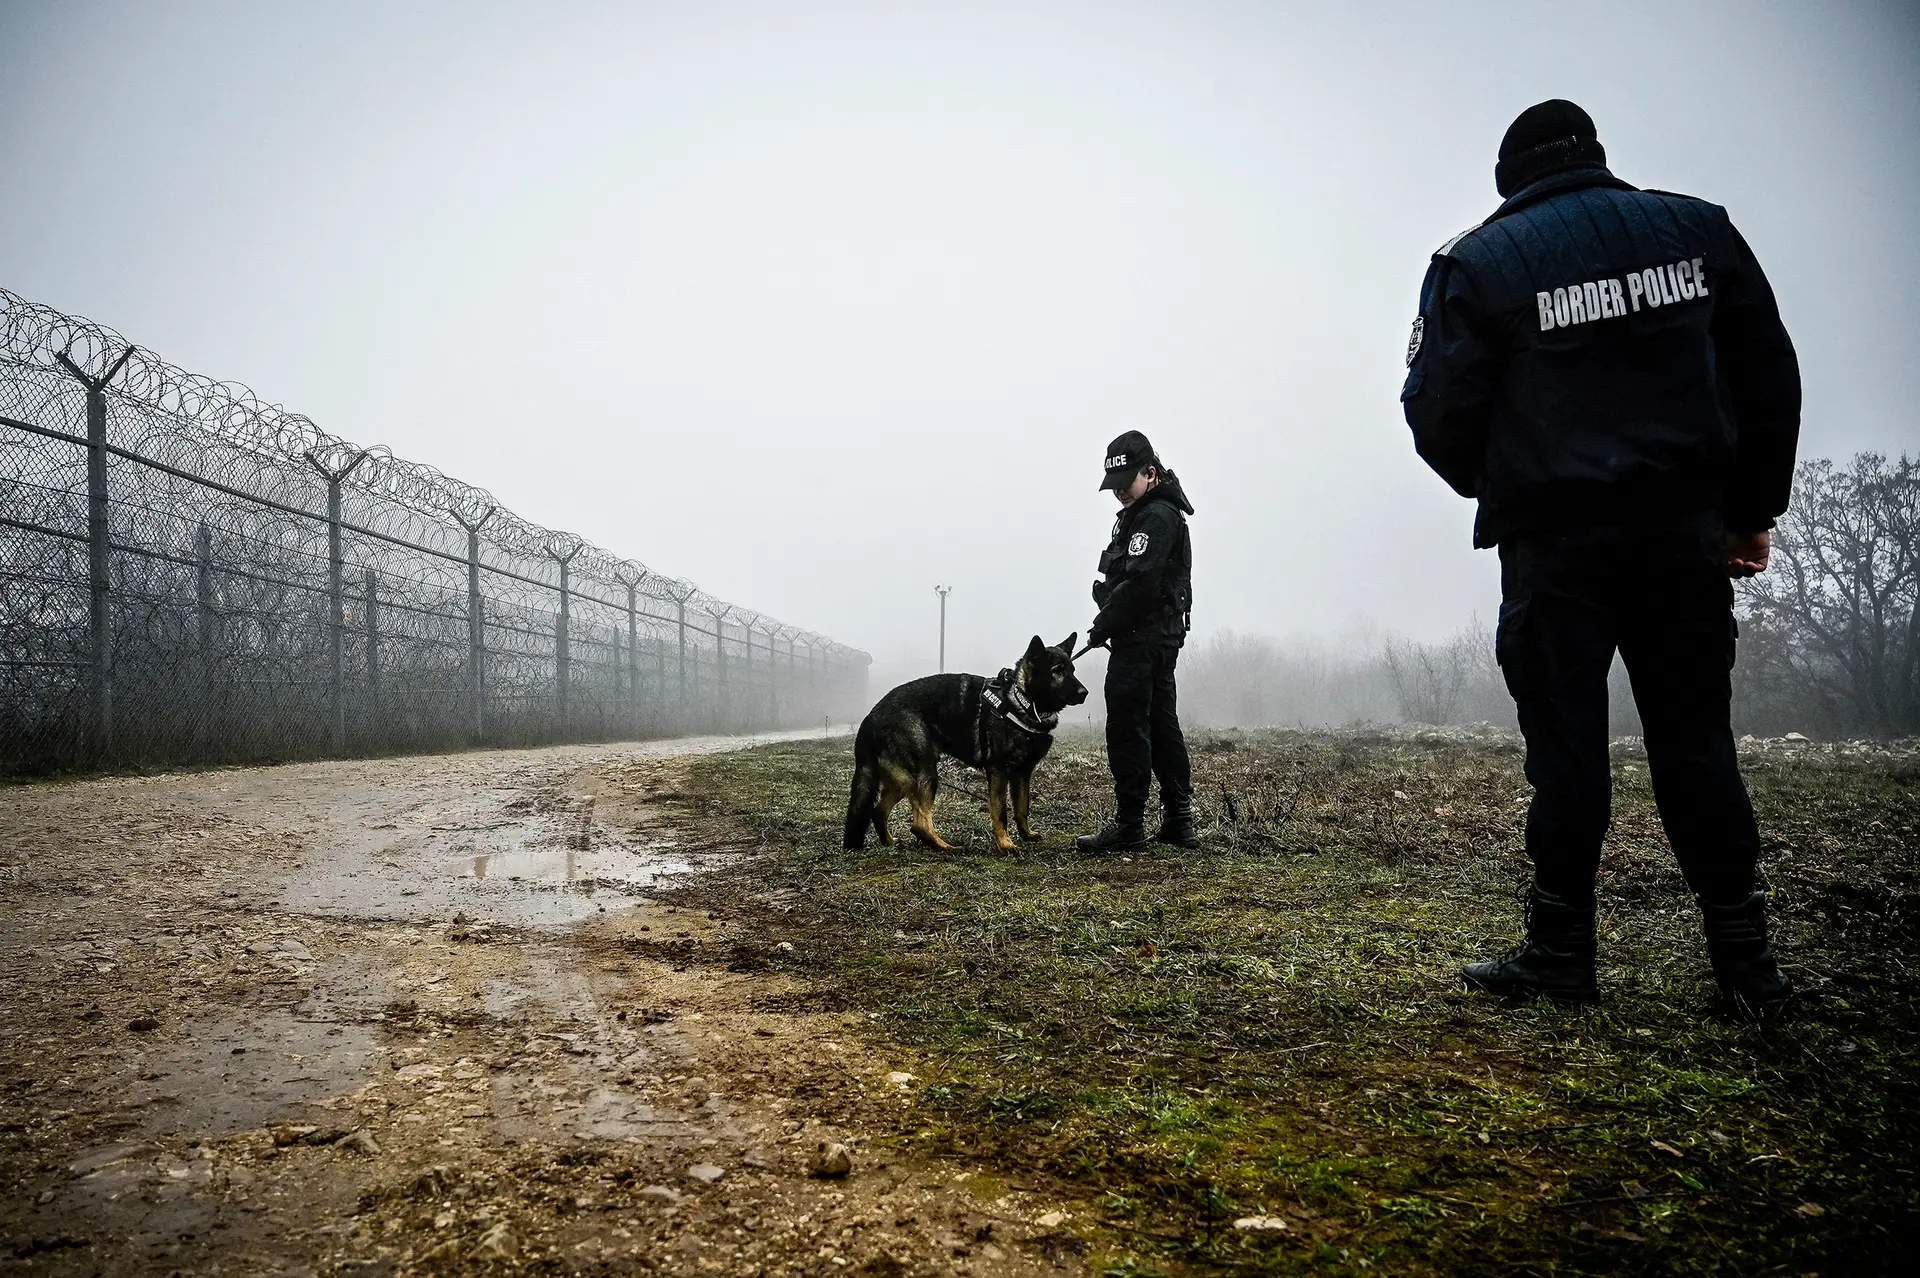 Guardas búlgaros patrulham a fronteira com a Turquia, onde vários países europeus pedem a construção de um muro